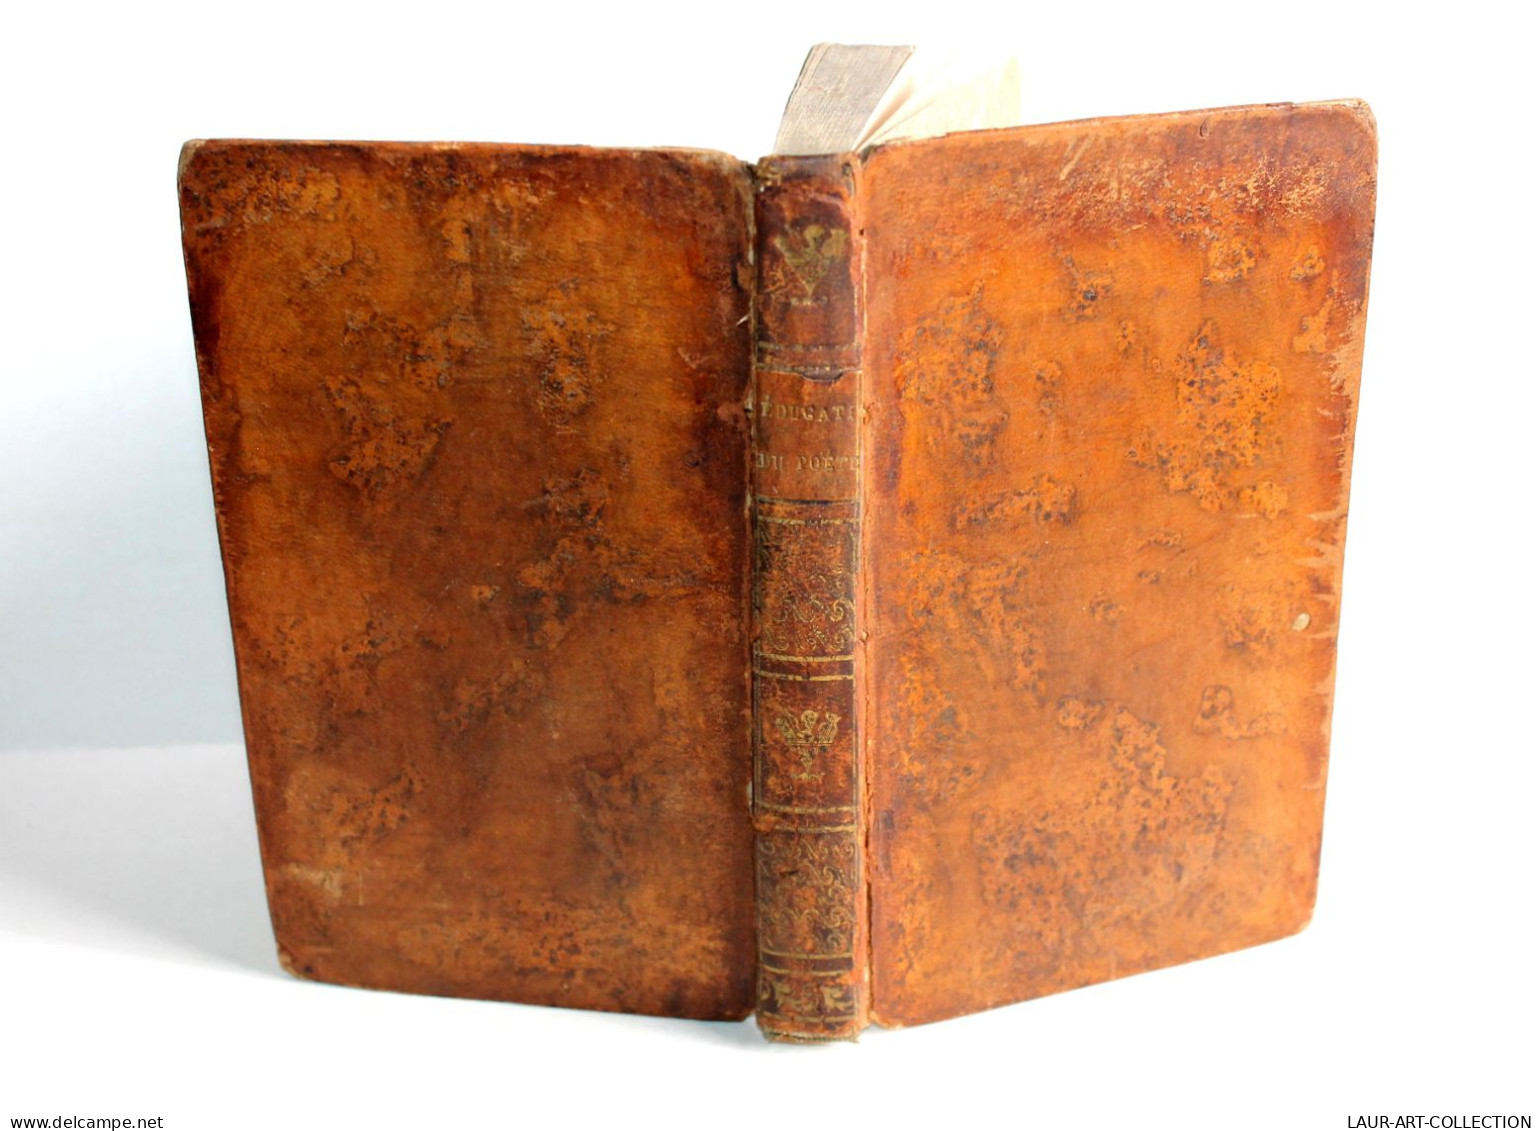 L'EDUCATION DU POETE POEME IMITÉ DE VIDA + XV LETTRES ACADEMIQUES De VALANT 1814 / ANCIEN LIVRE XIXe SIECLE (1803.146) - Autores Franceses